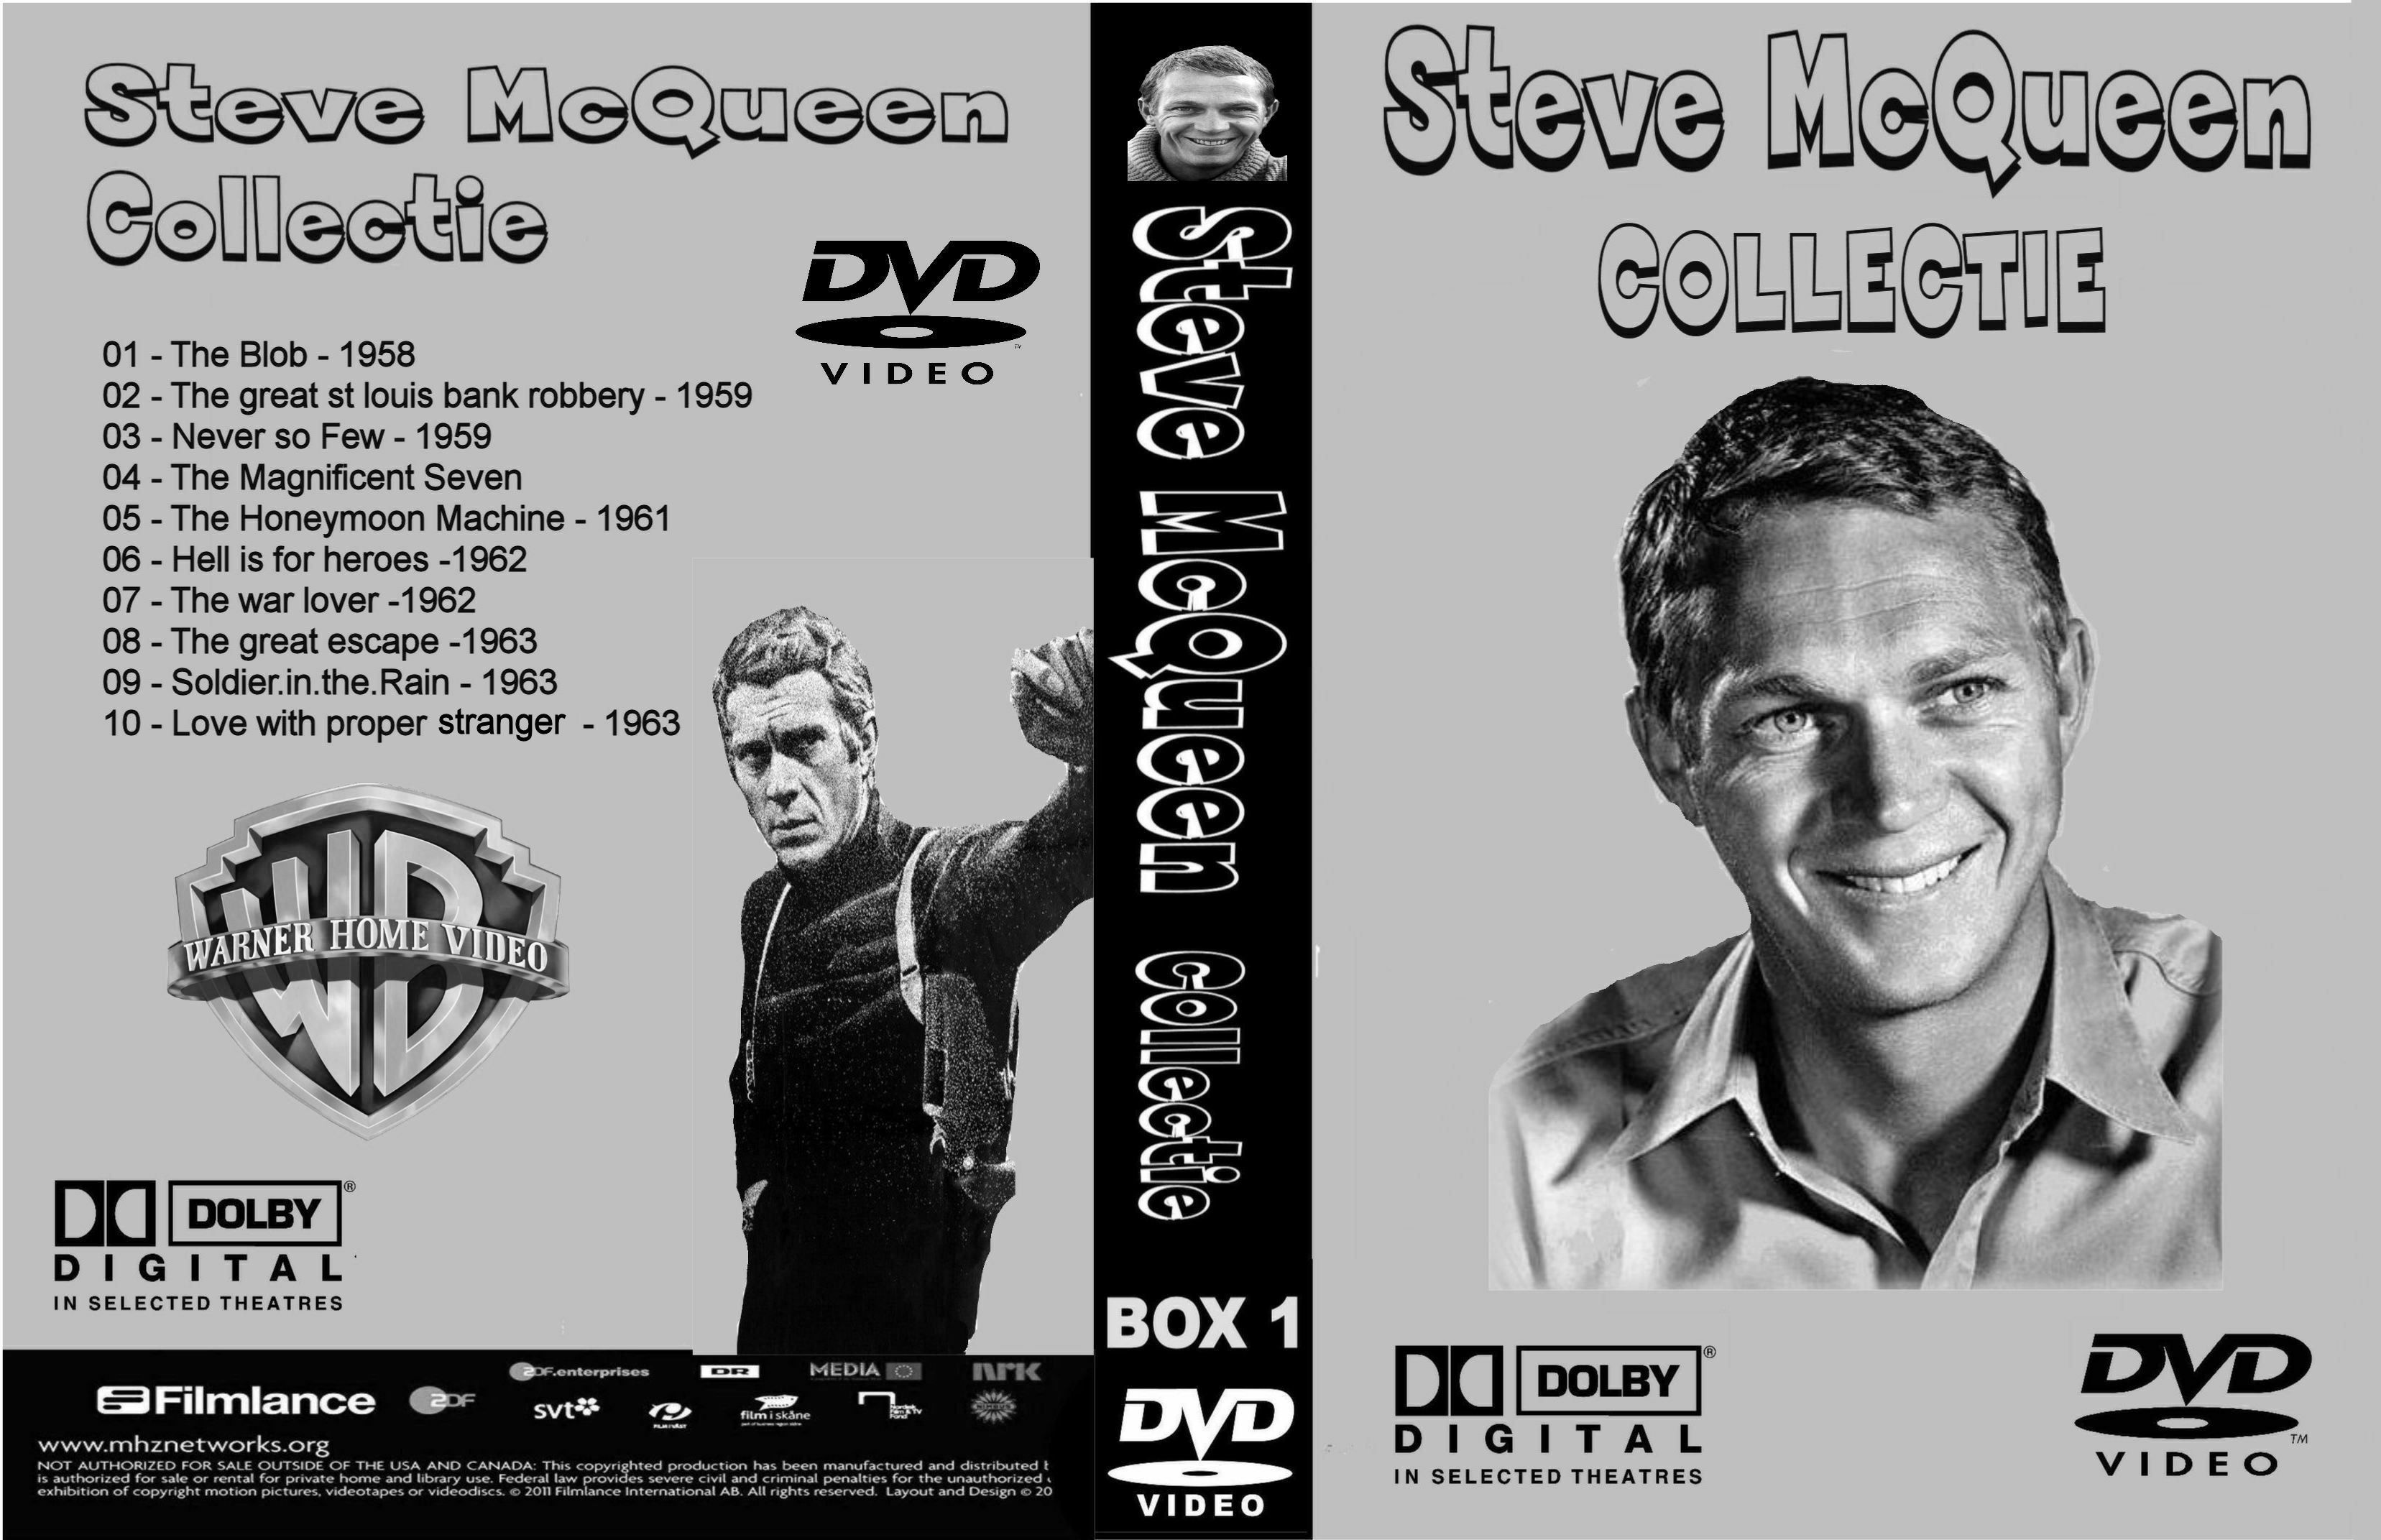 Steve McQueen CollectiieBox 1 DvD 9 van 10